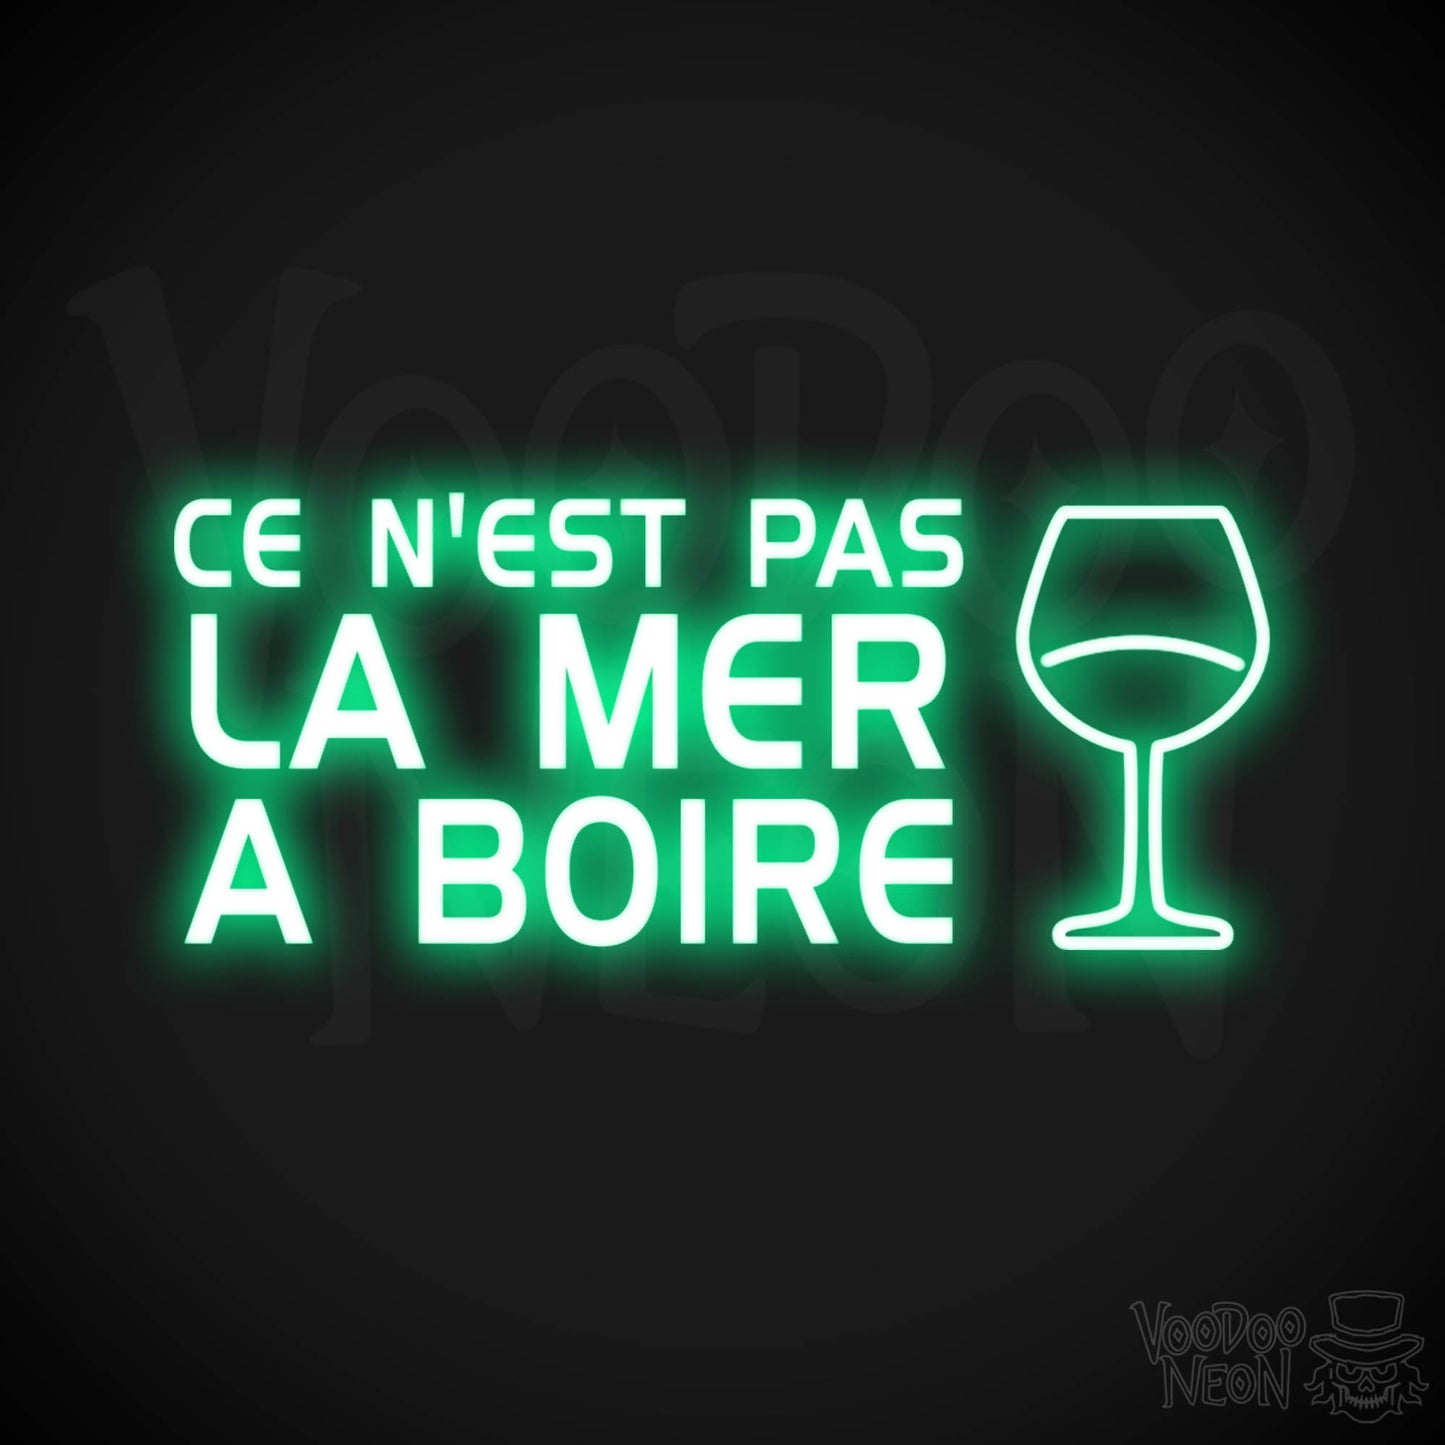 Ce N'est Pas La Mer a Boire Neon Sign - LED Lights - Color Green